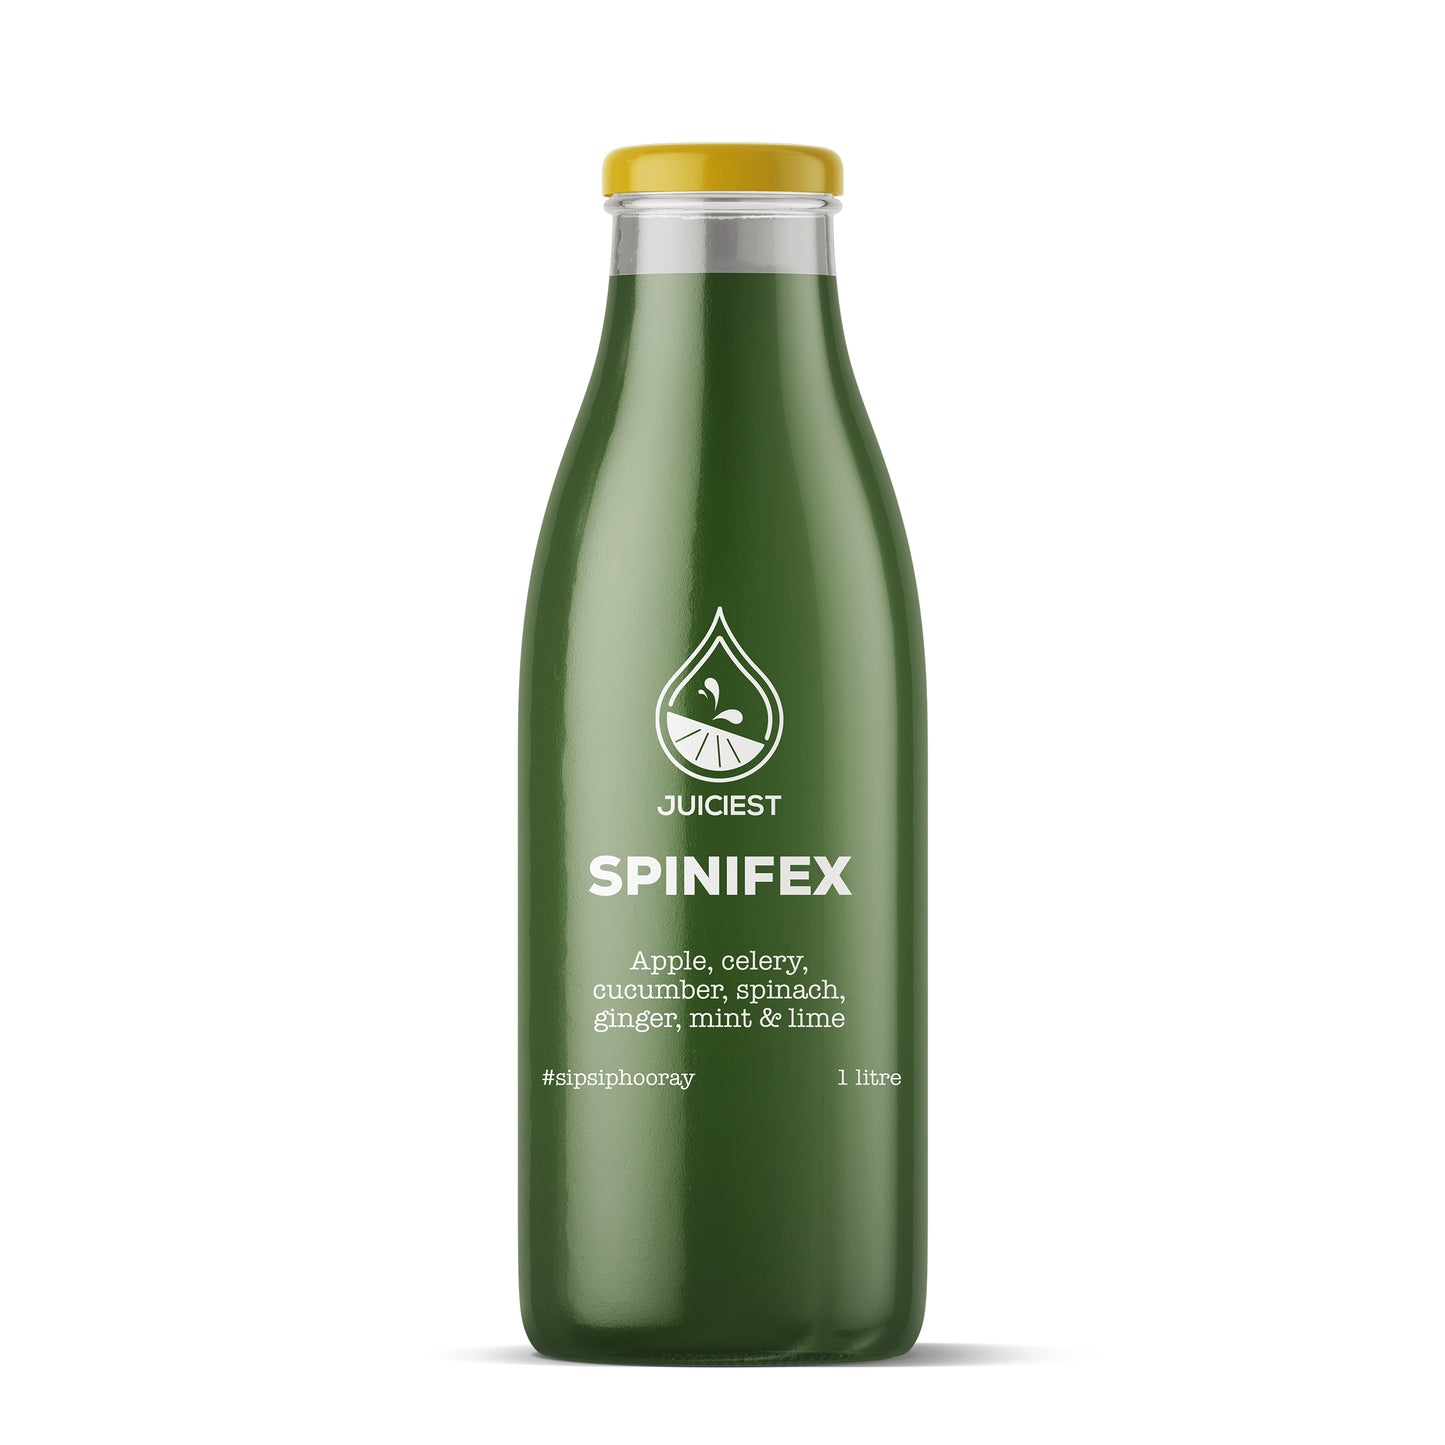 Juiciest Spinifex 1L bottle